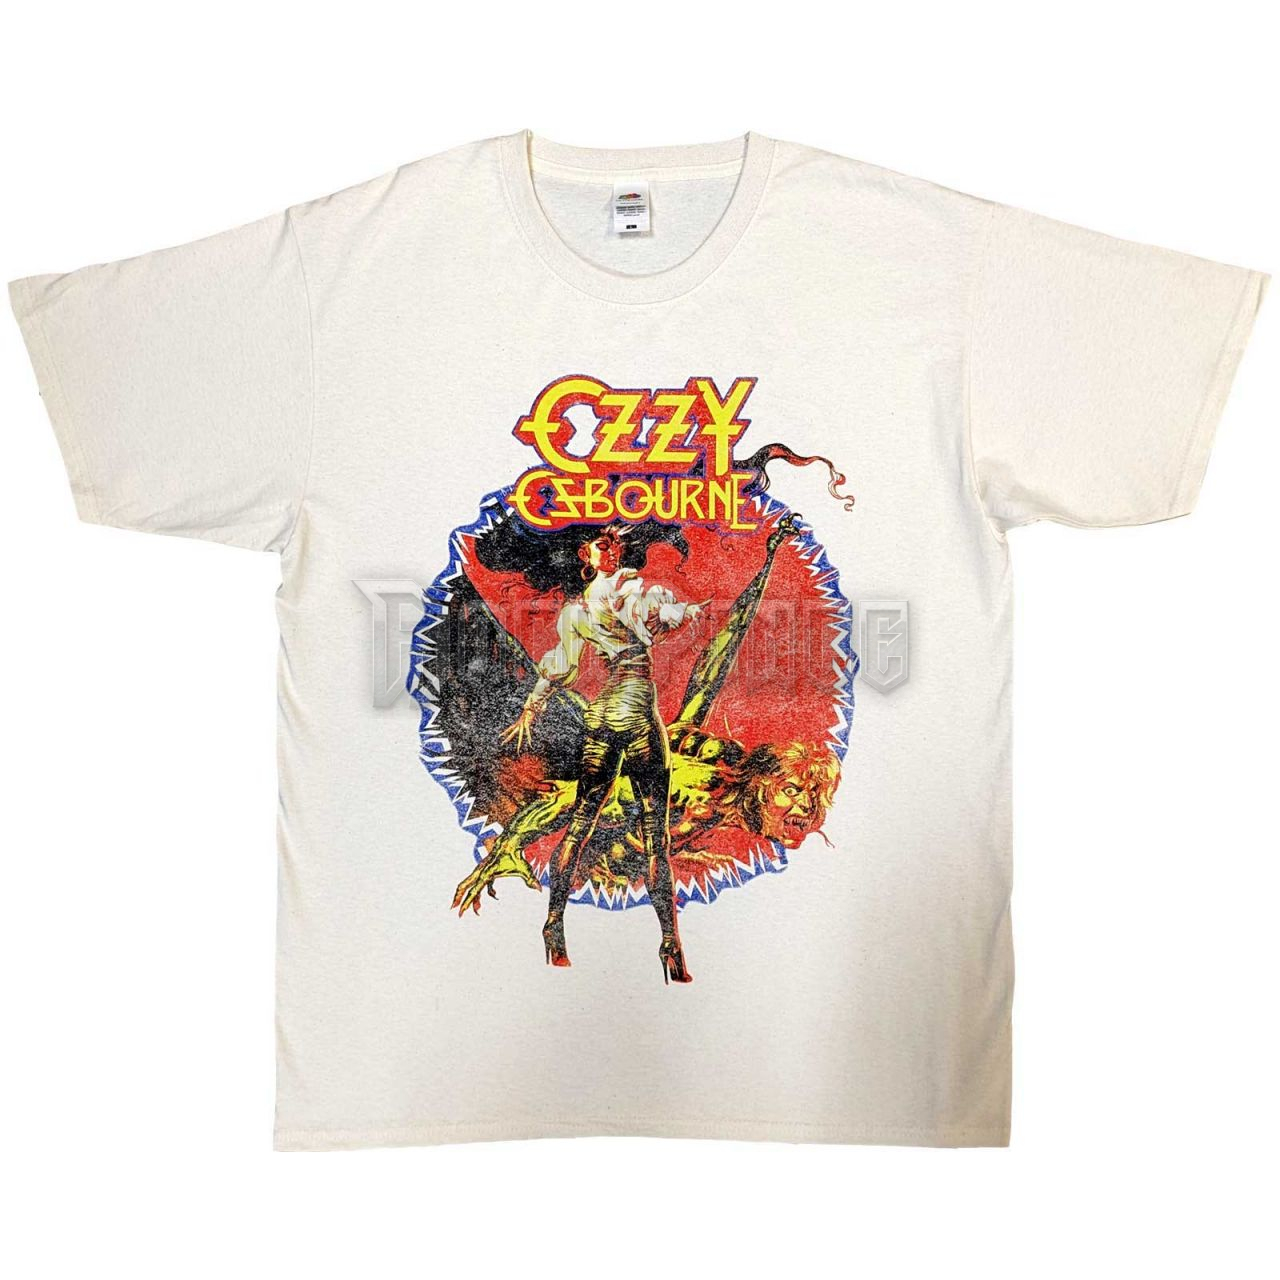 Ozzy Osbourne - The Ultimate Sin Tour '86 - unisex póló - OZZTS36MNAT